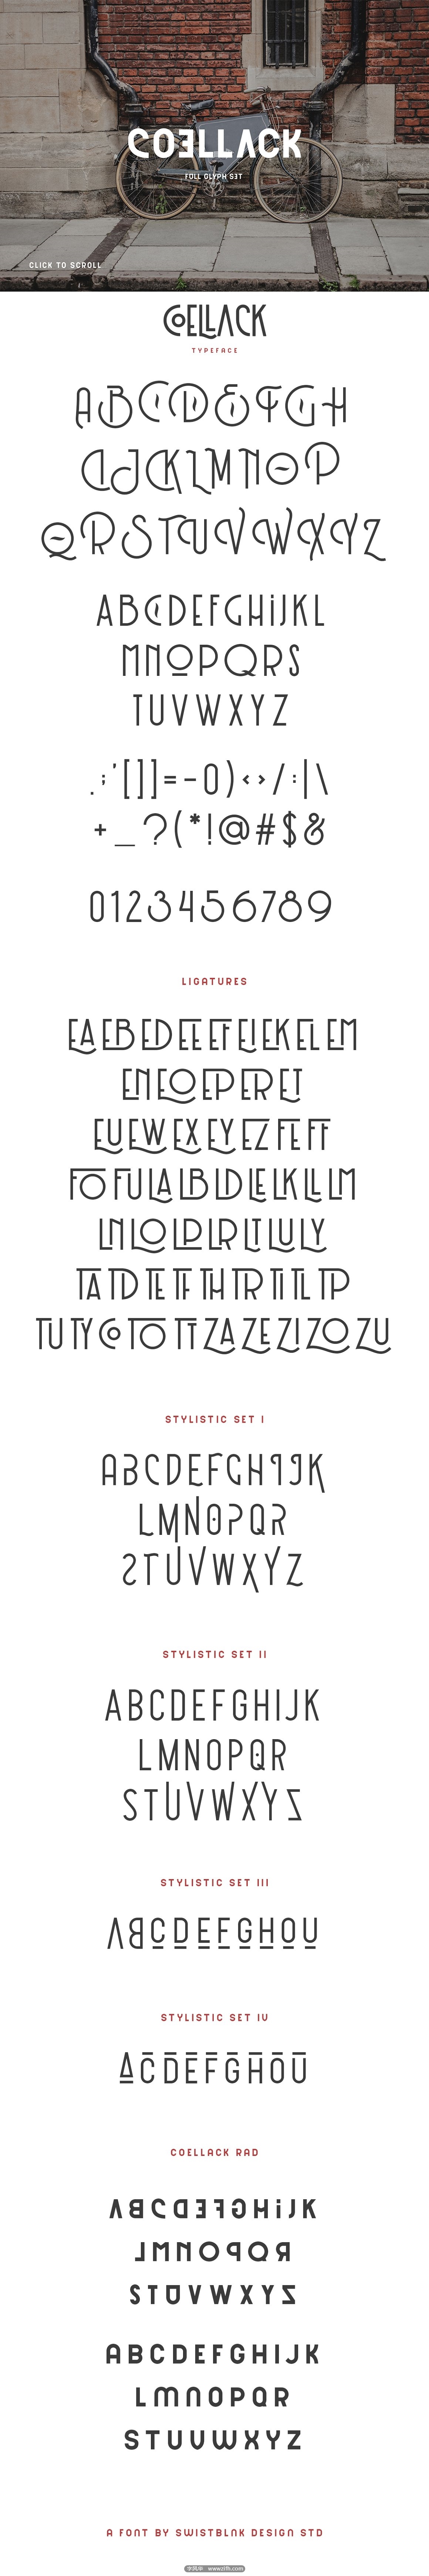 Coellack Typeface-4.jpg